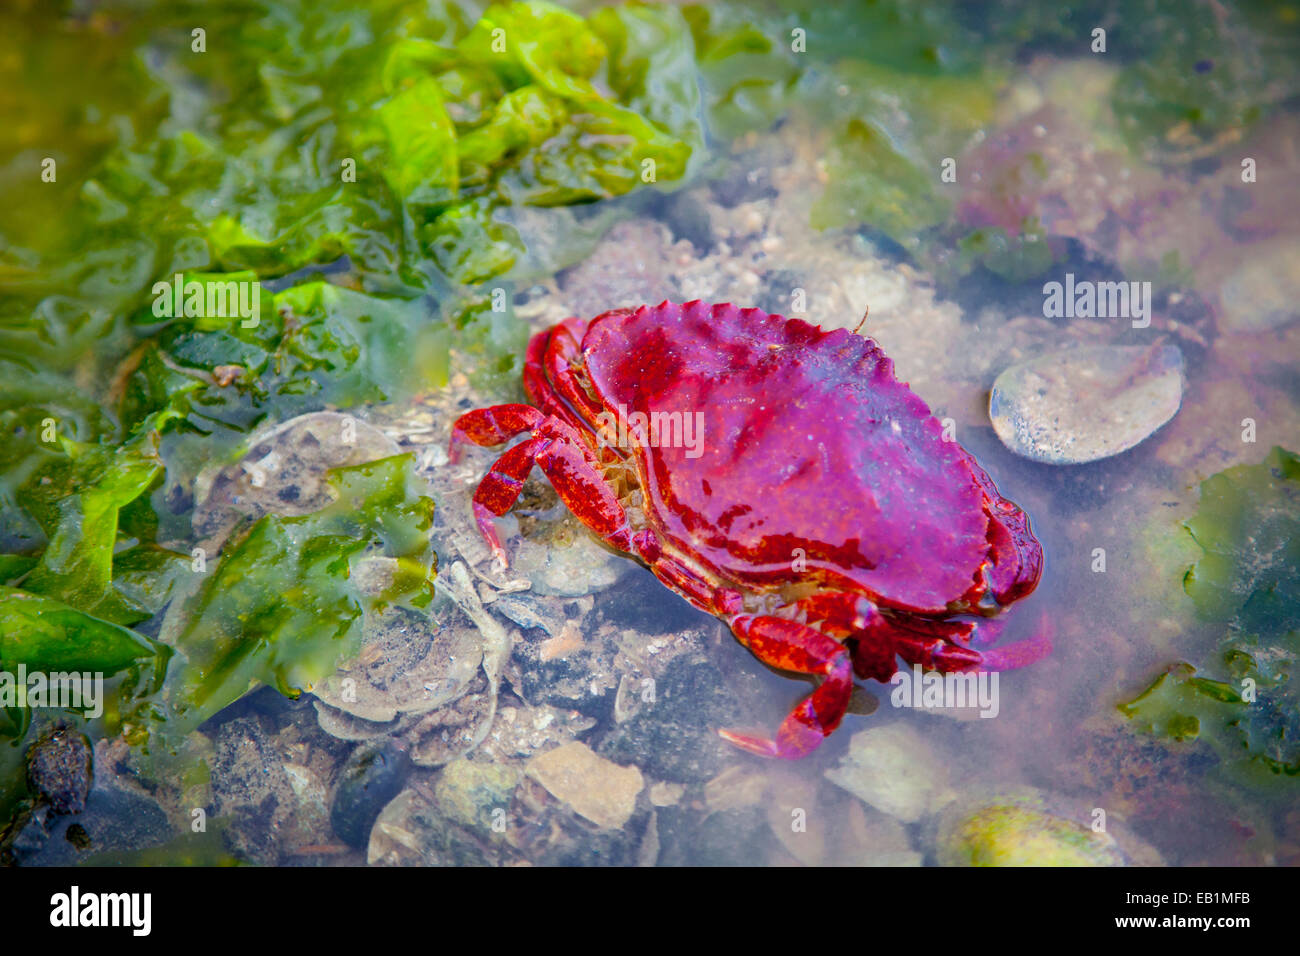 Los cangrejos y las algas en un estanque de rocas en marea baja en Sechelt, British Columbia, Canadá Foto de stock